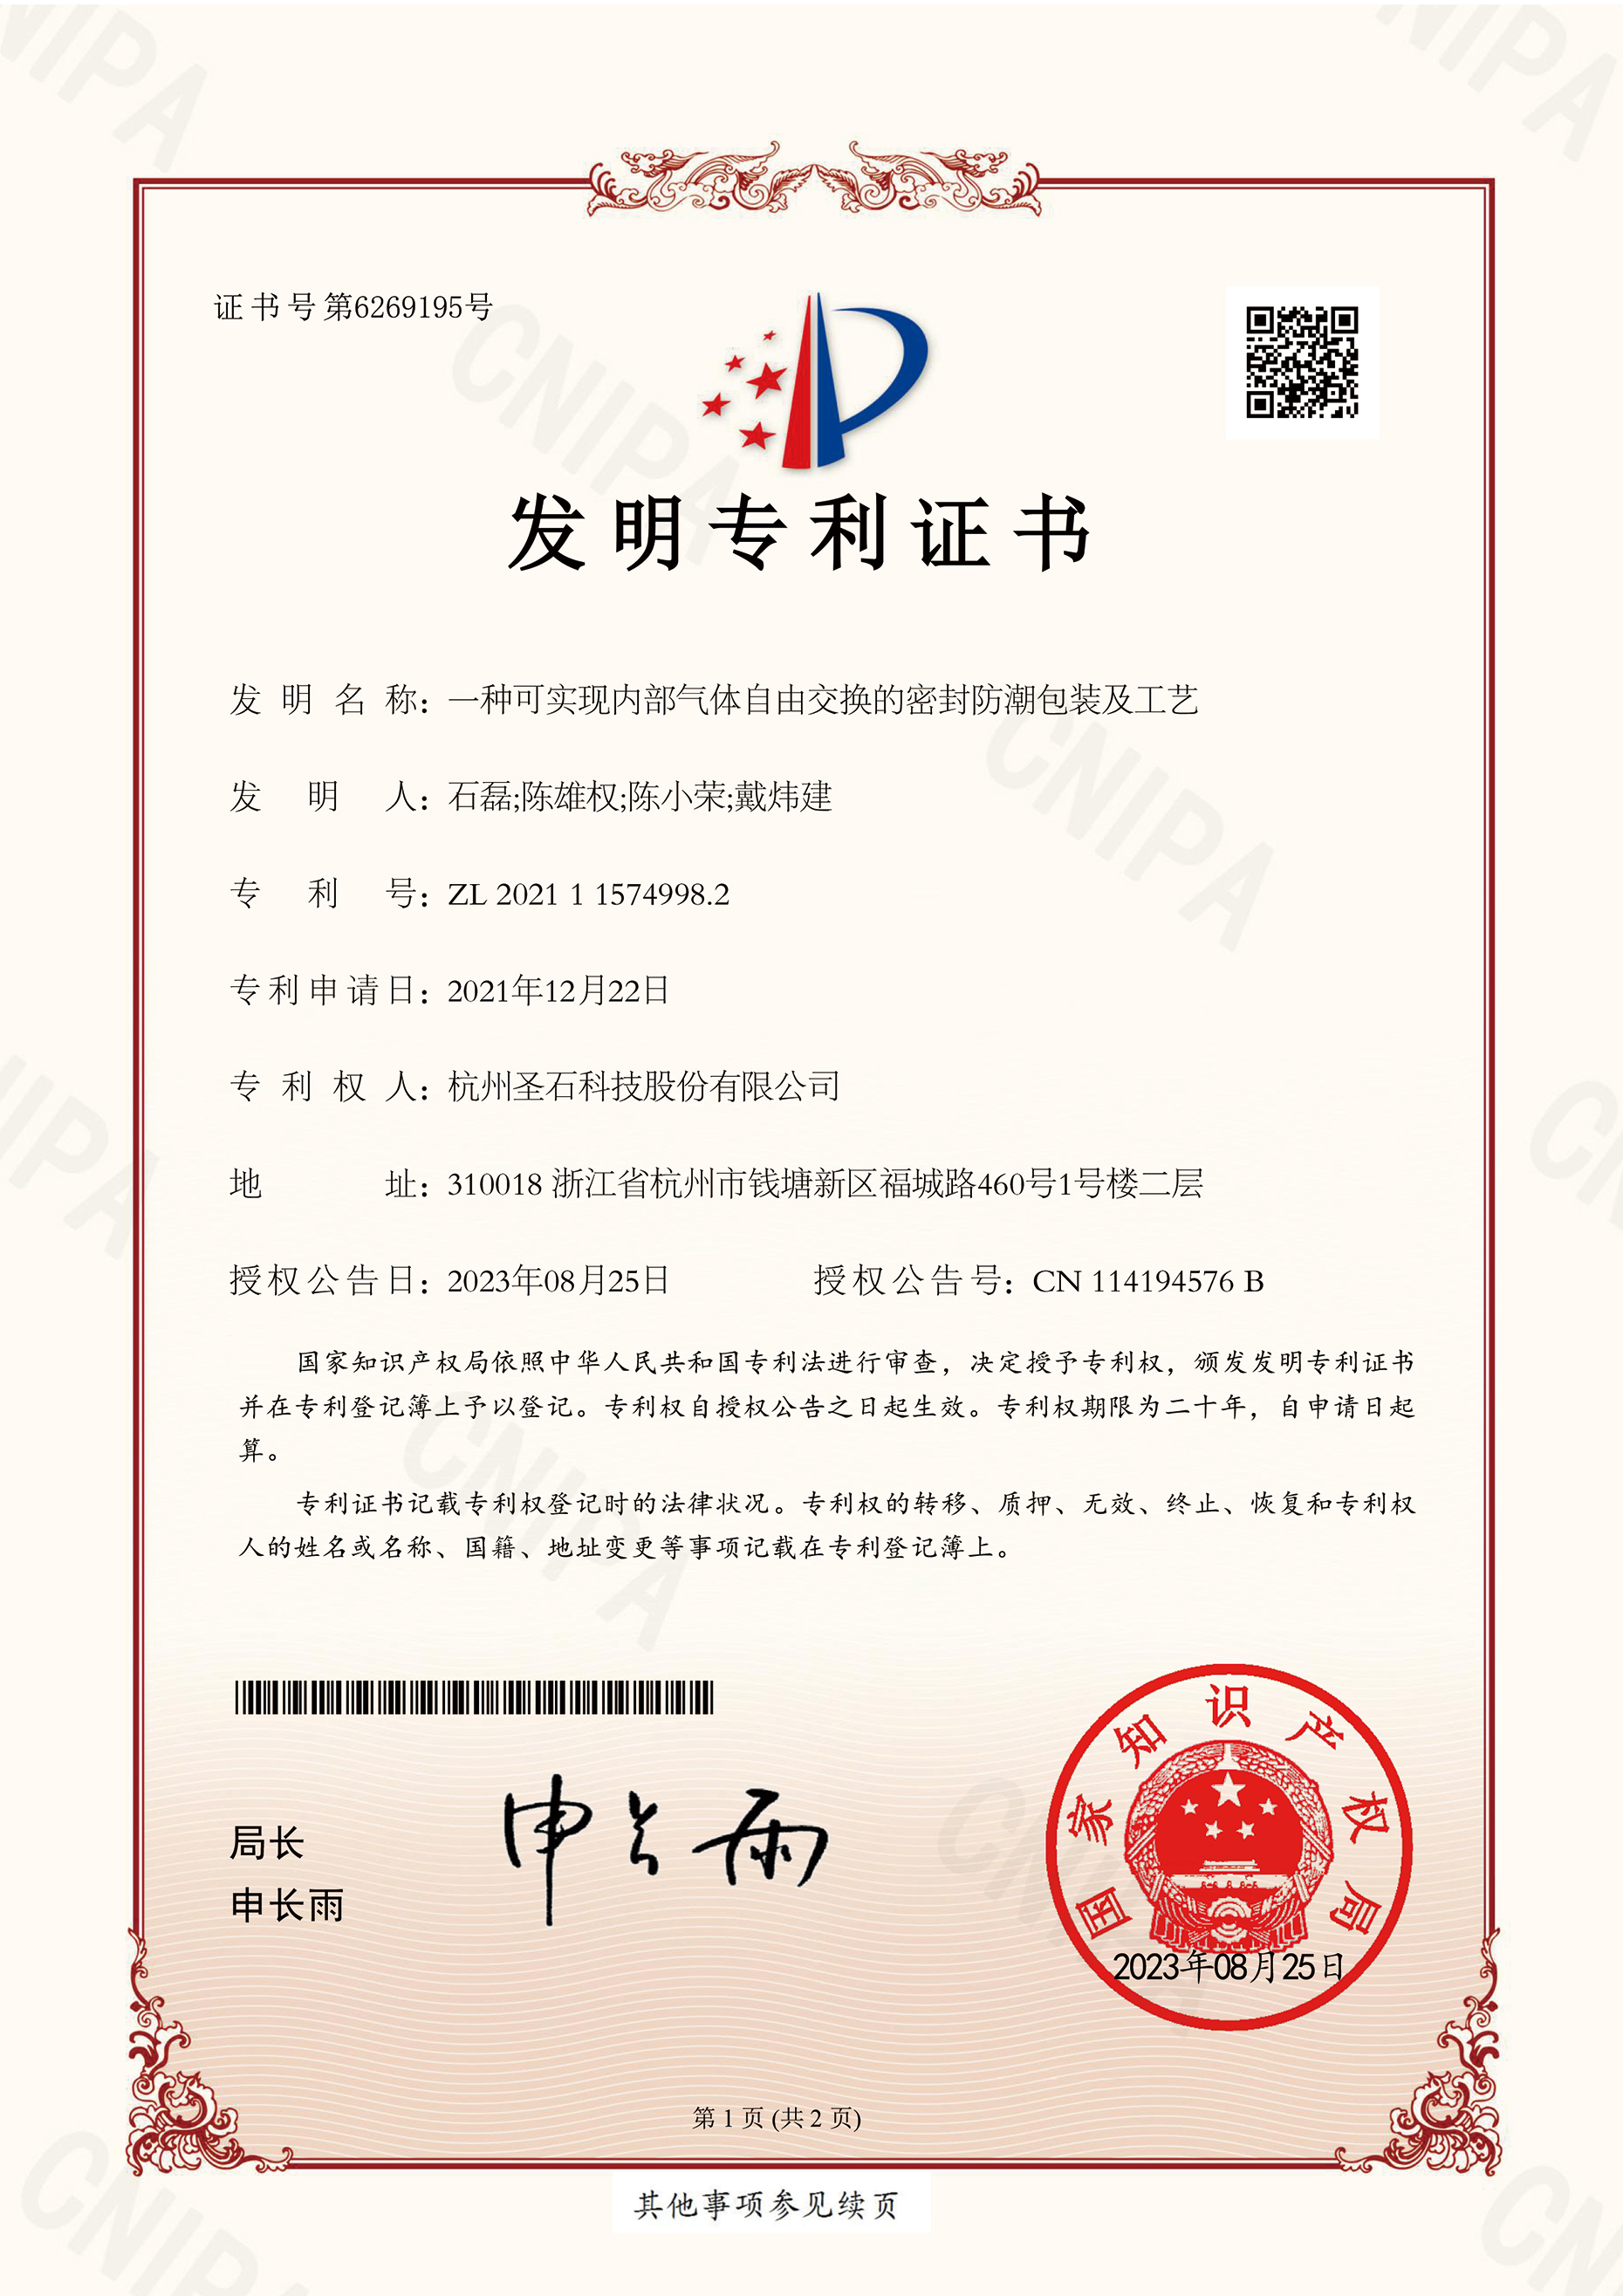 A-S-07  2021115749982-一种可实现内部气体自由交换的密封防潮包装及工艺-杭州圣石科技股份有限公司-证书(1)-1.jpg